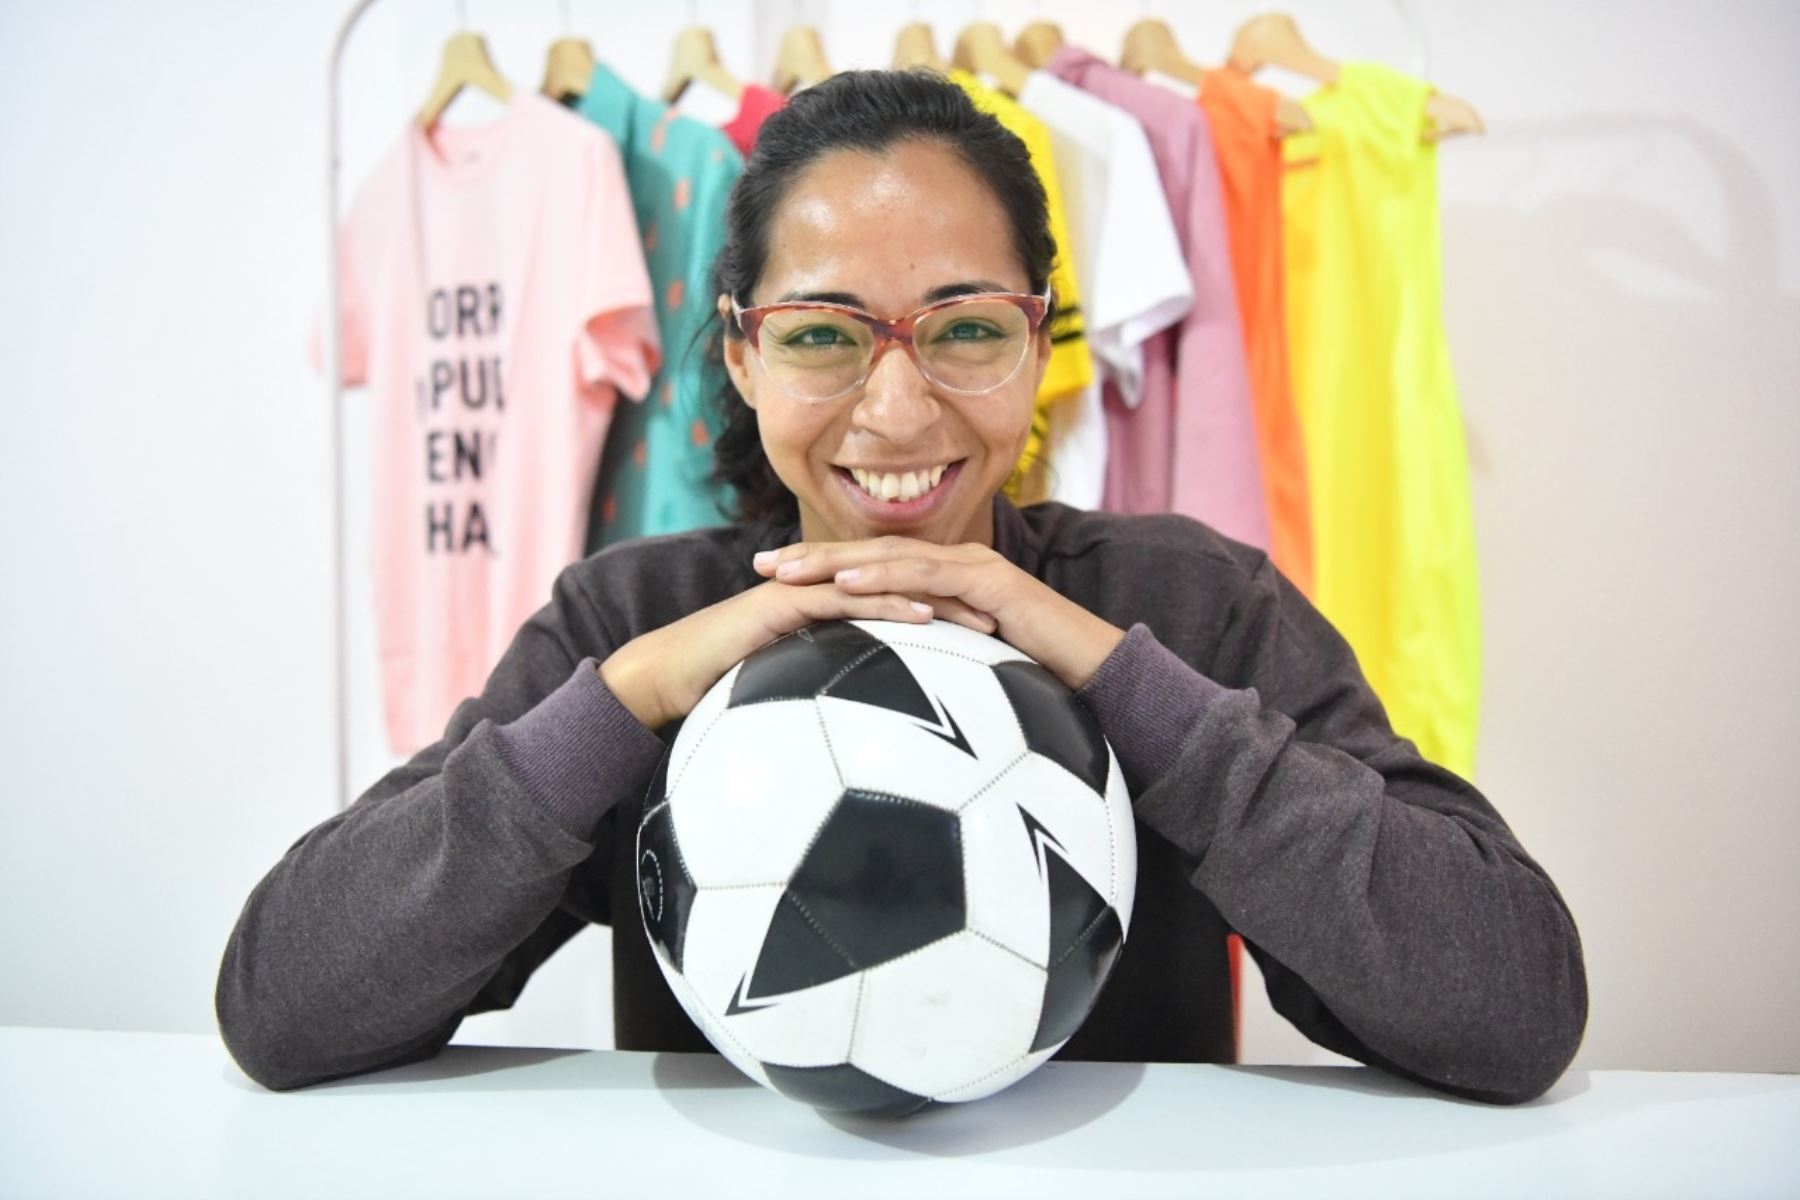 Carla Paredes, emprendedora peruana que registró su marca de ropa para mujeres futboleras Prágol. Foto: Cortesía.